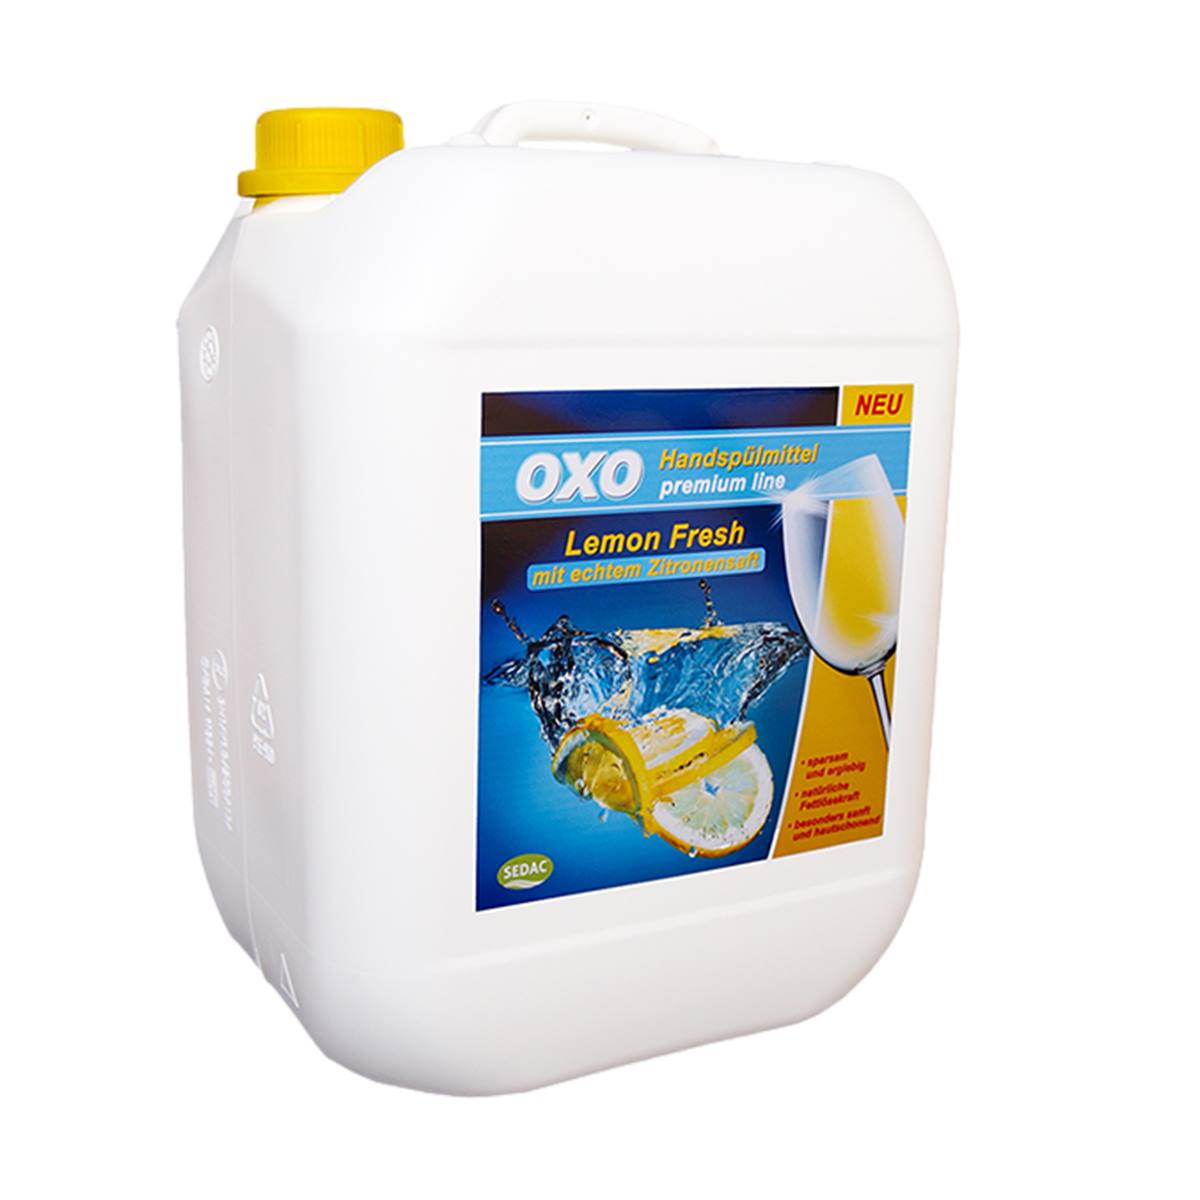 OXO Spülmittel Lemon Fresh Premium 10 L